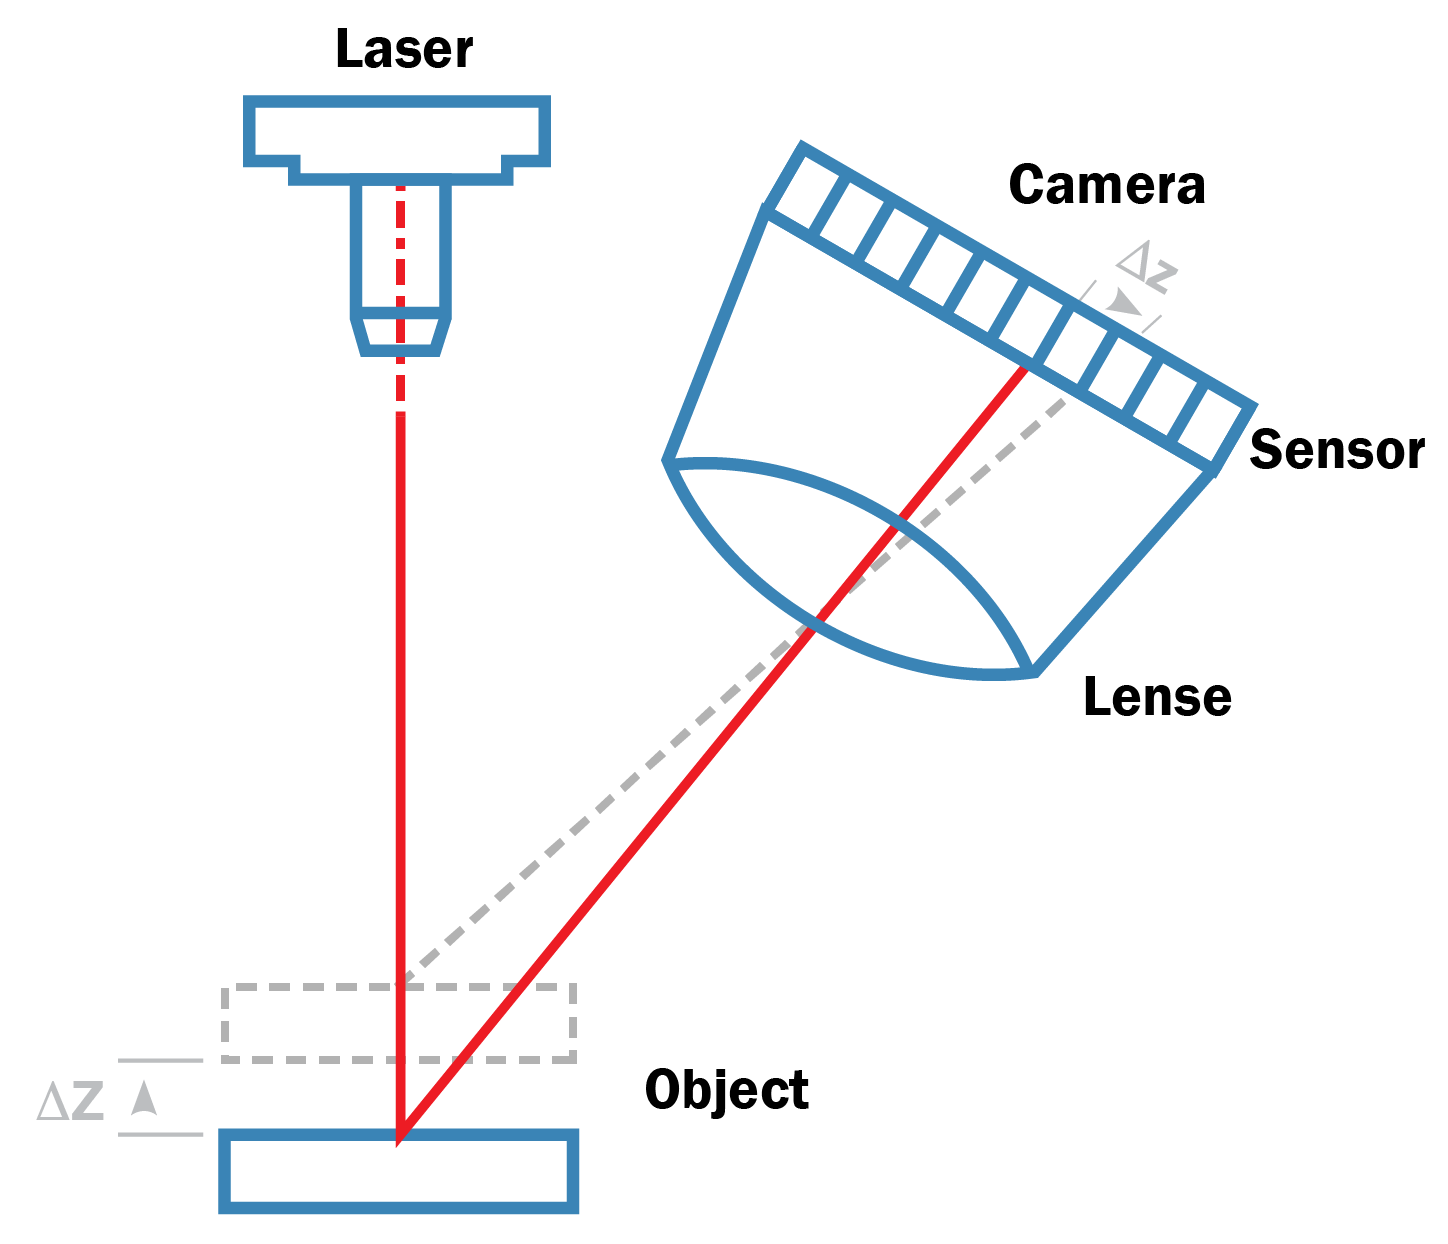 A técnica baseada em triangulação cria uma forma de triângulo composta pelo emissor de laser, a reflexão do laser no objeto e a câmera que captura a reflexão do laser.